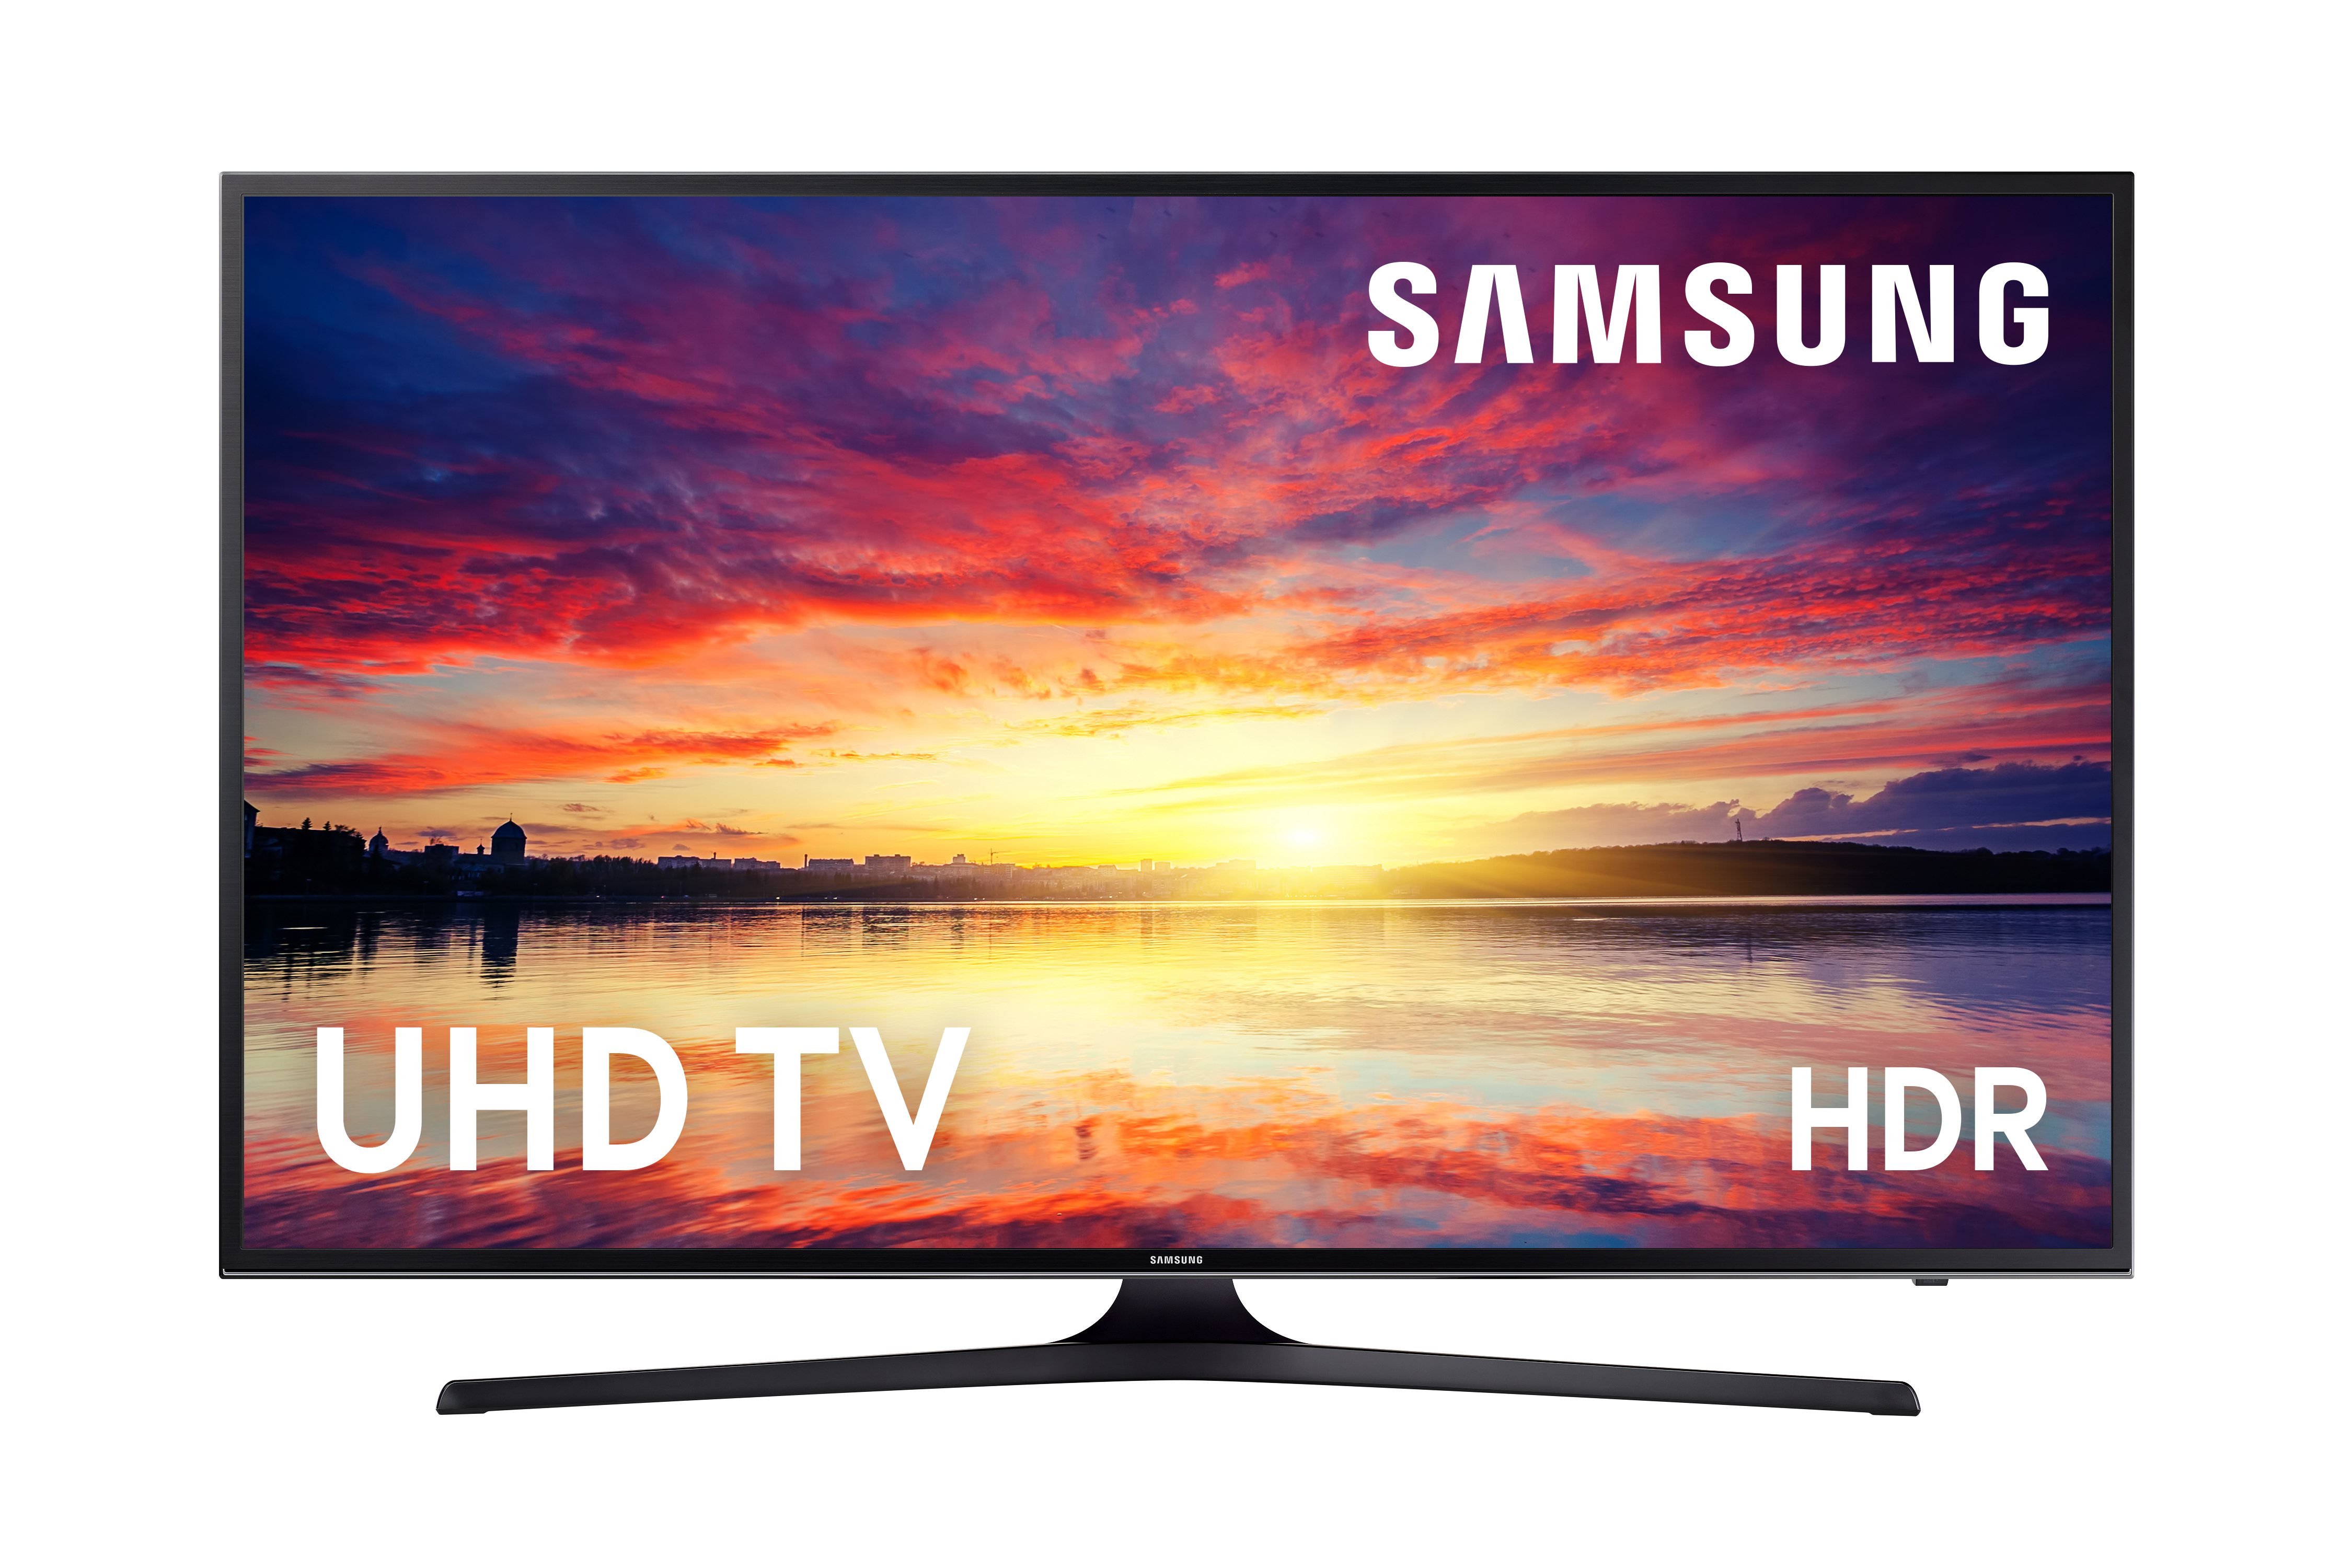 Samsung Led Smart Tv